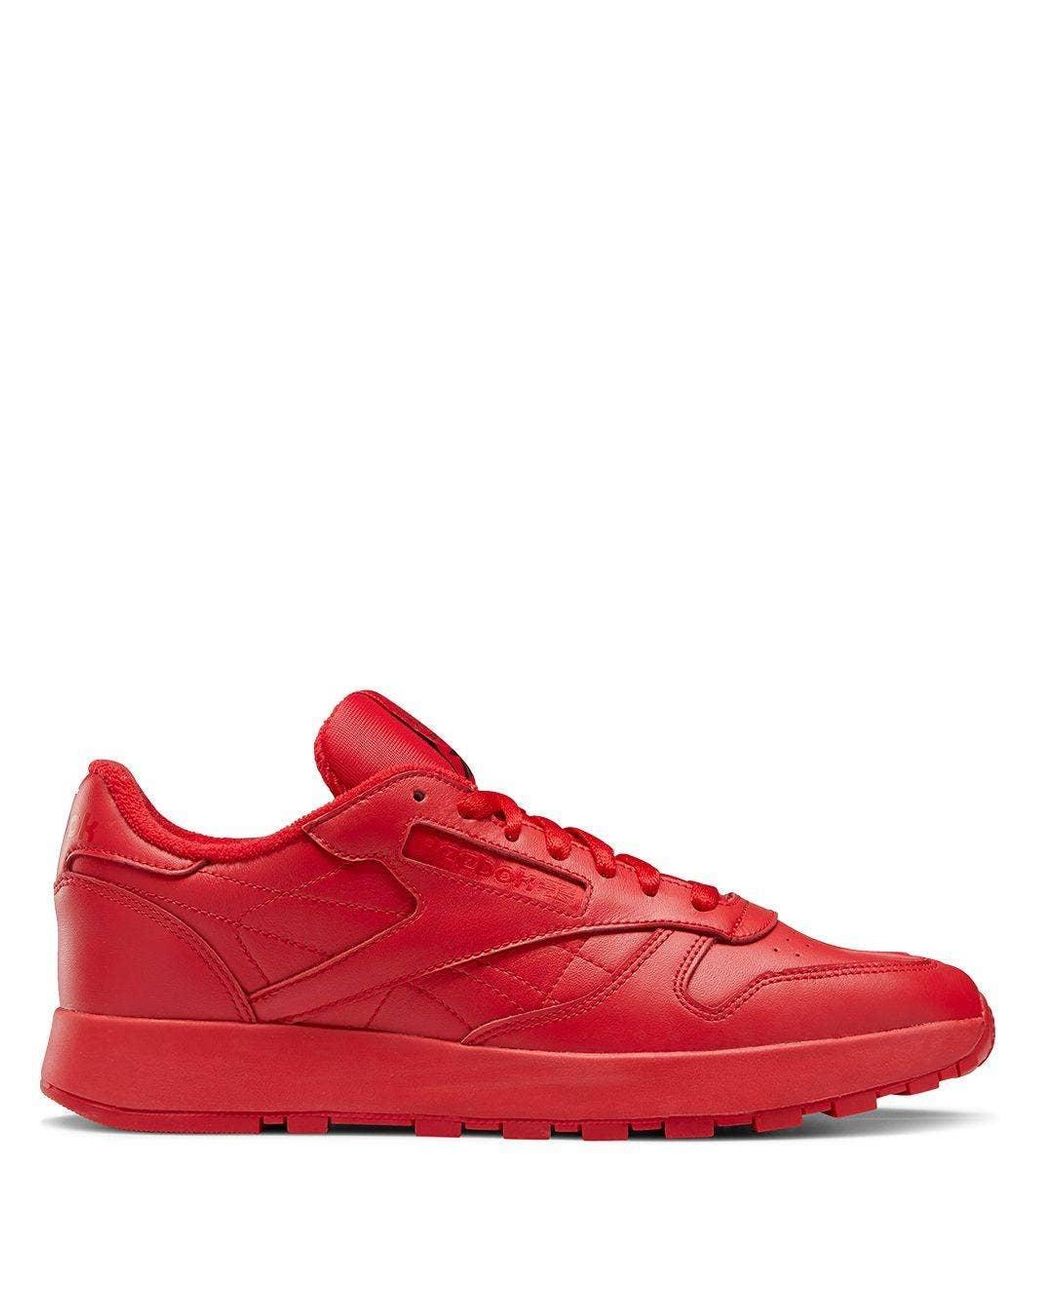 Reebok X Maison Margiela Red Leather Split Toe Sneakers | Lyst